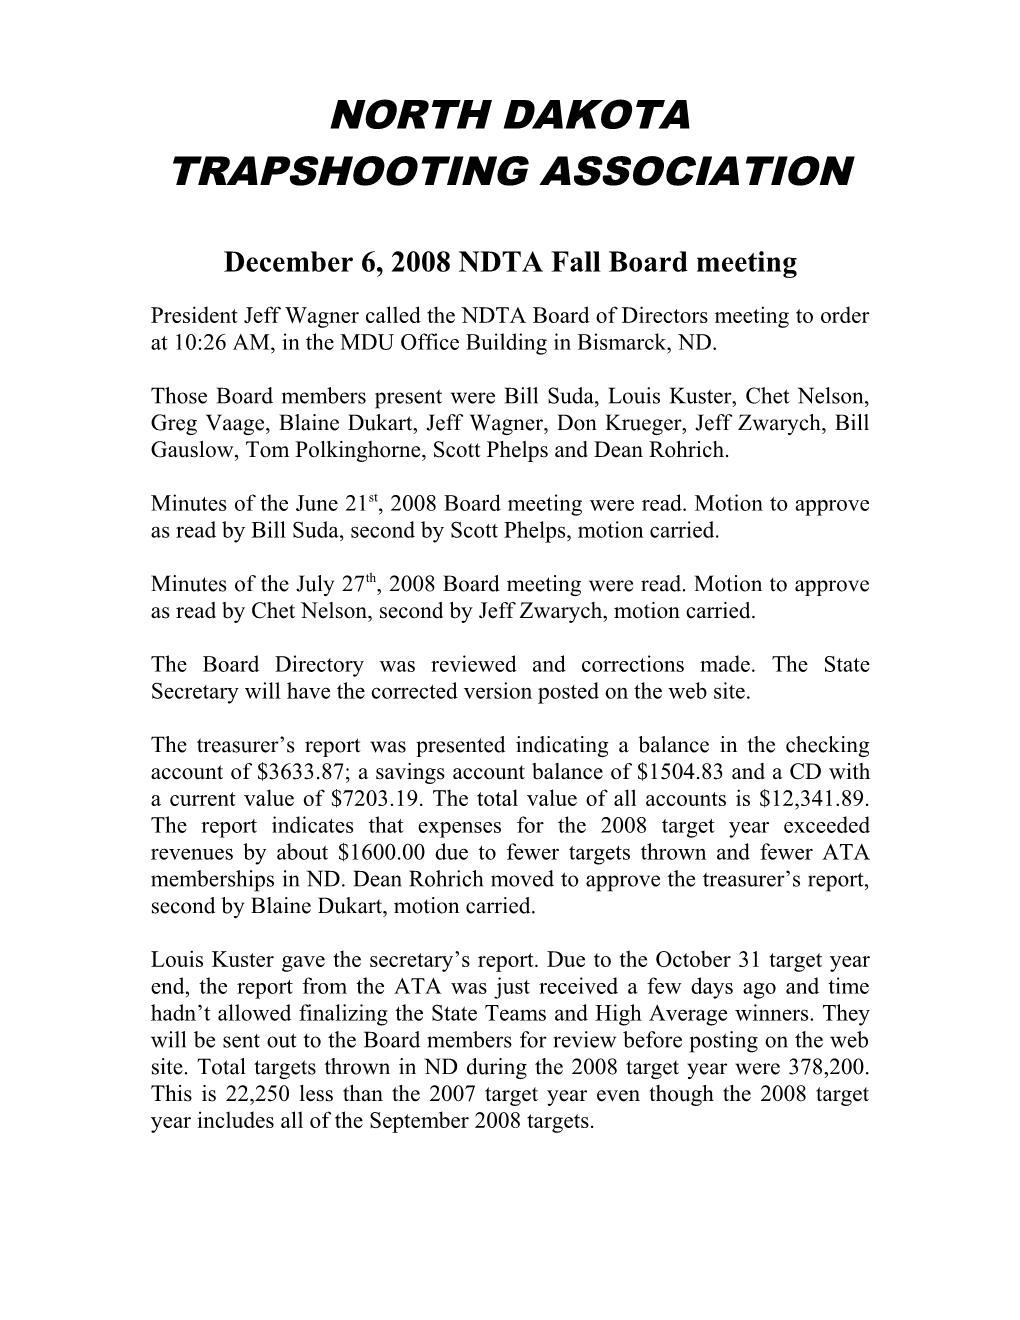 Trapshooting Association